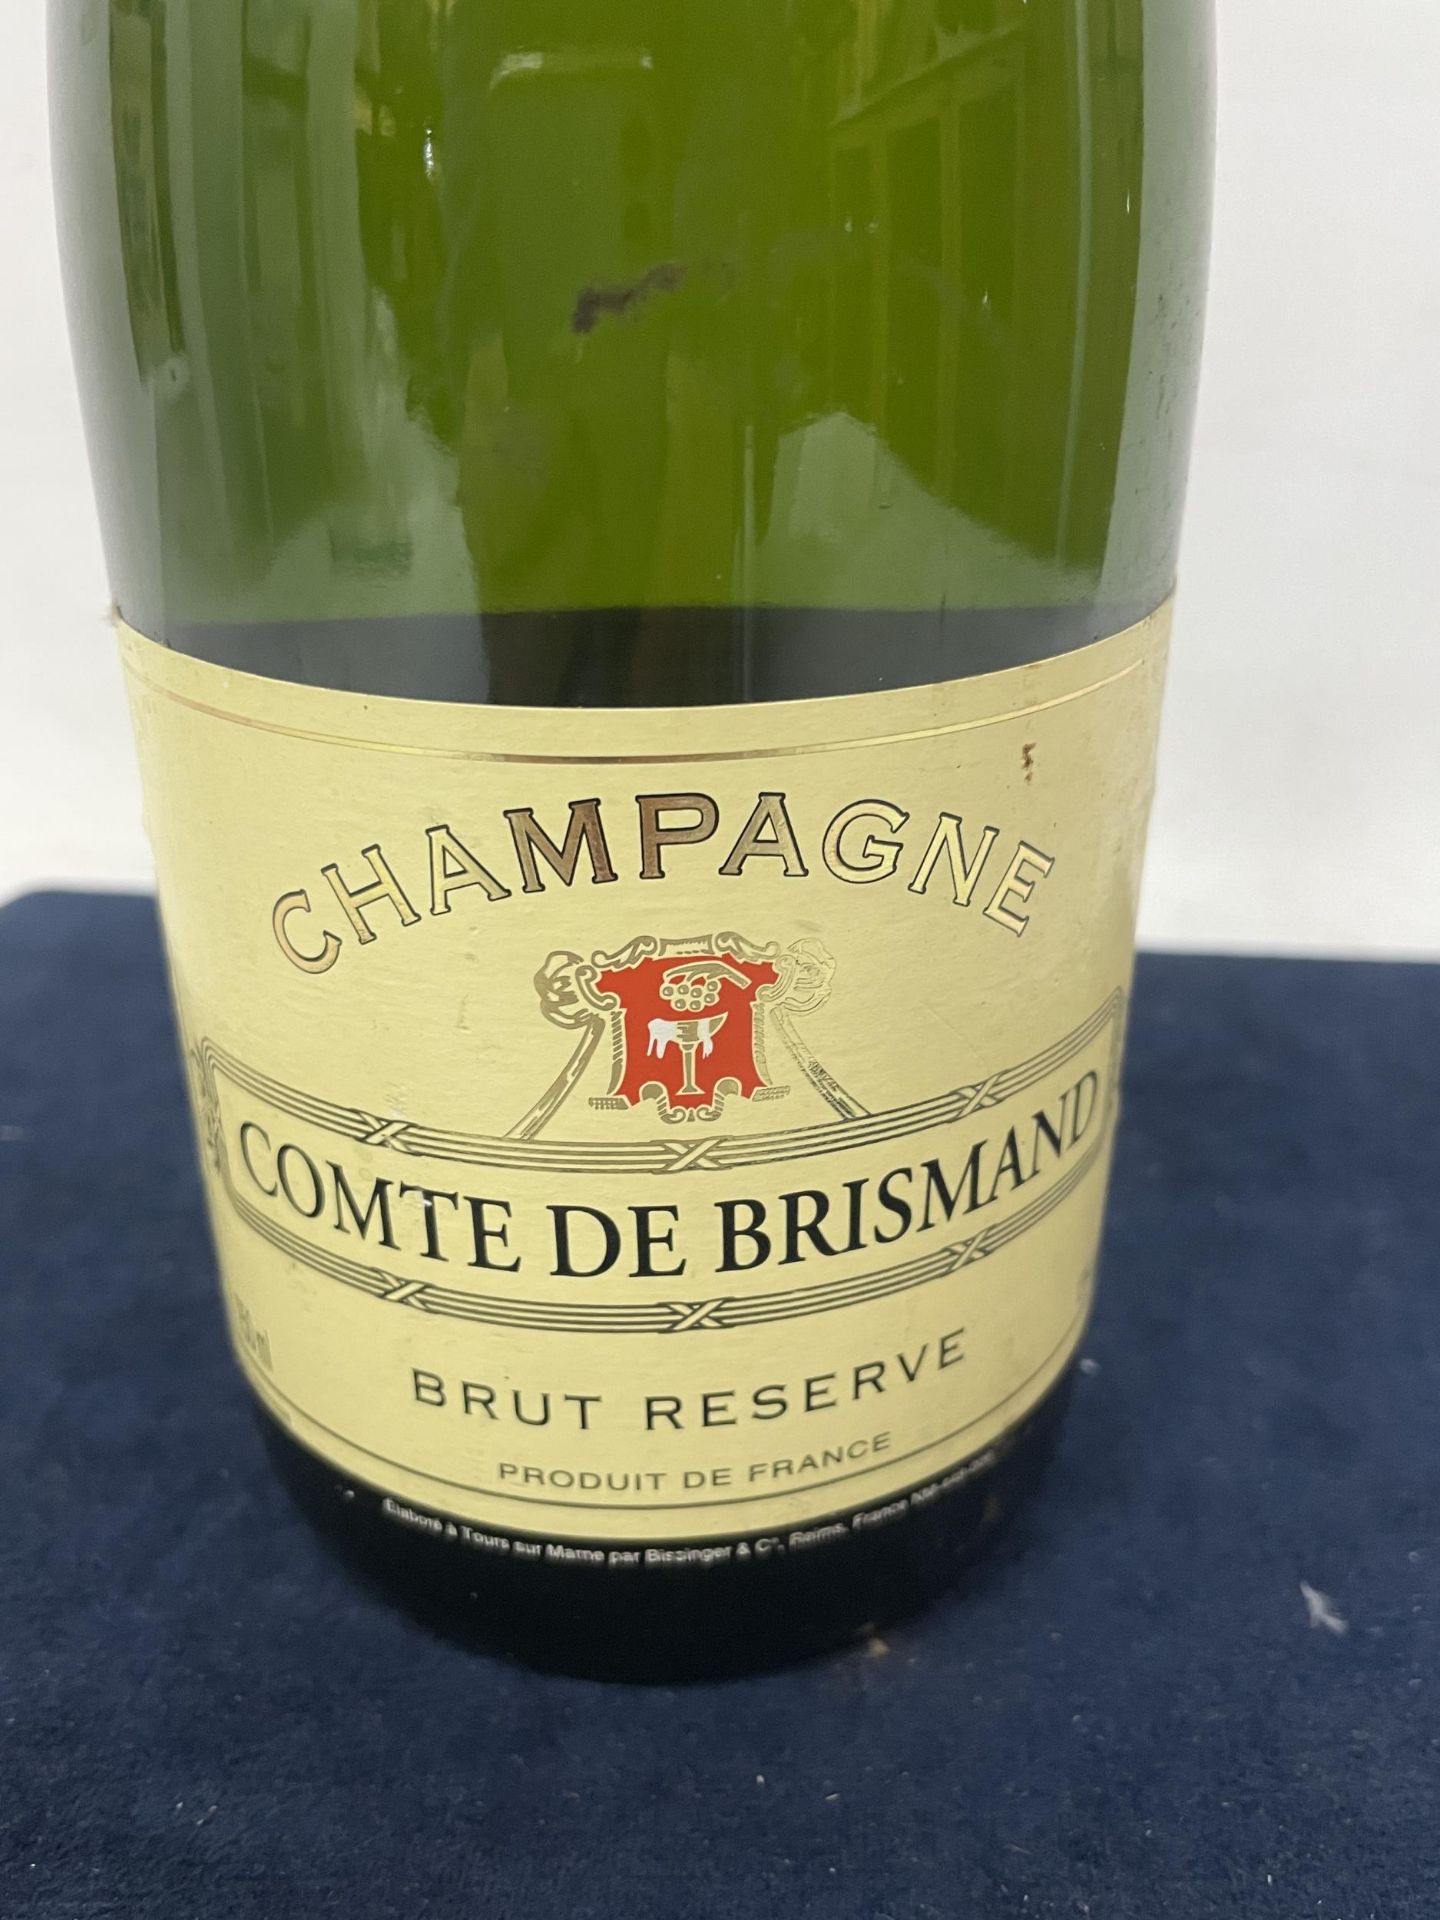 1 X 75CL BOTTLE - COMTE DE BRISMAND BRUT RESERVE - Image 3 of 3